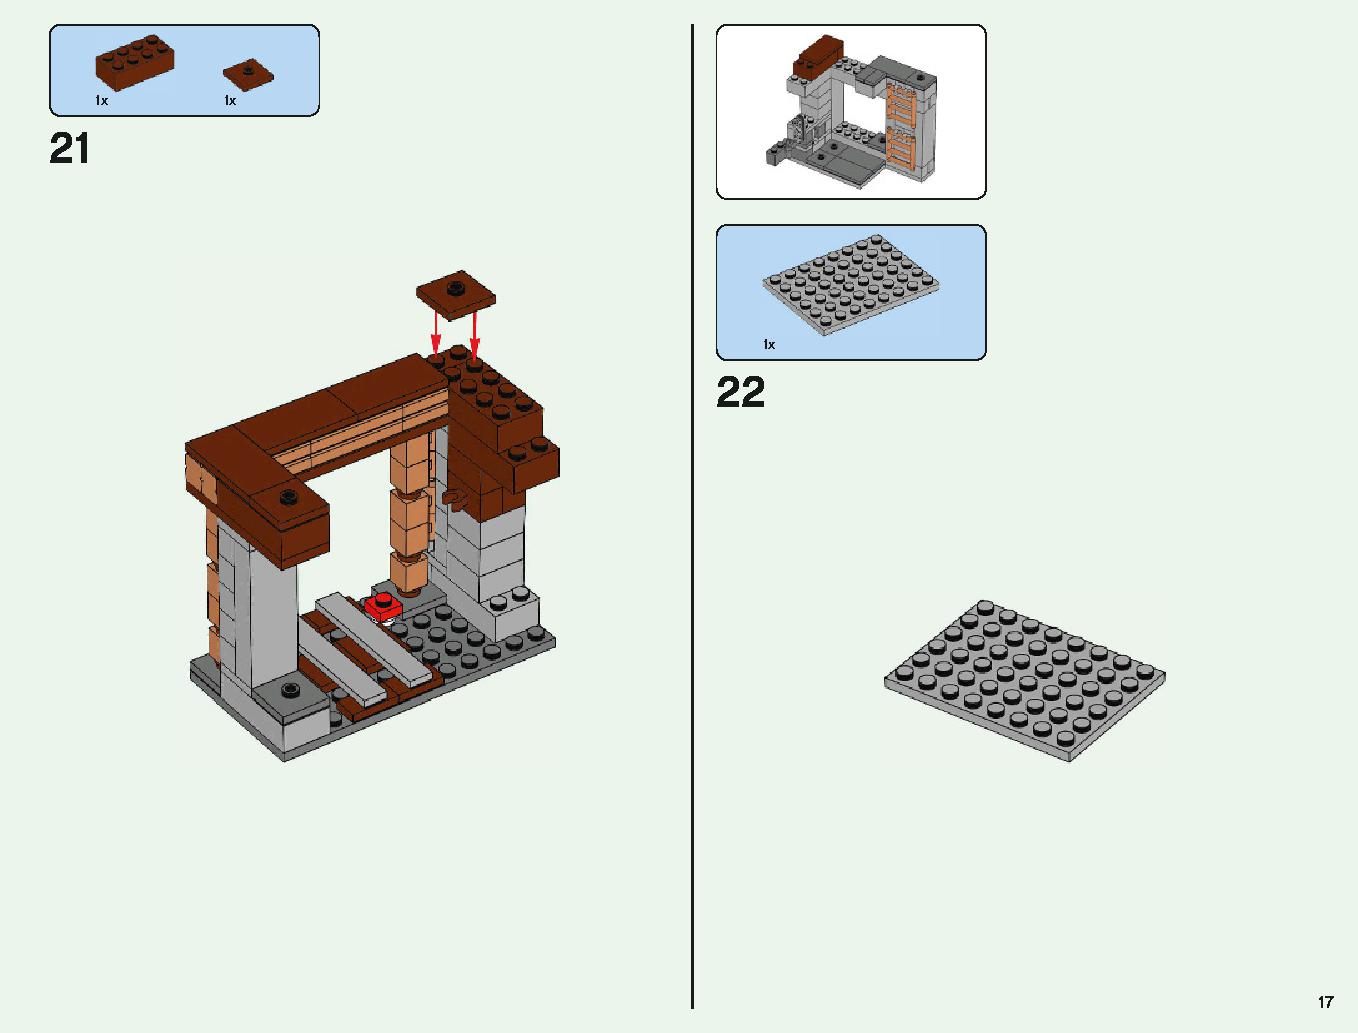 ベッドロックの冒険 21147 レゴの商品情報 レゴの説明書・組立方法 17 page